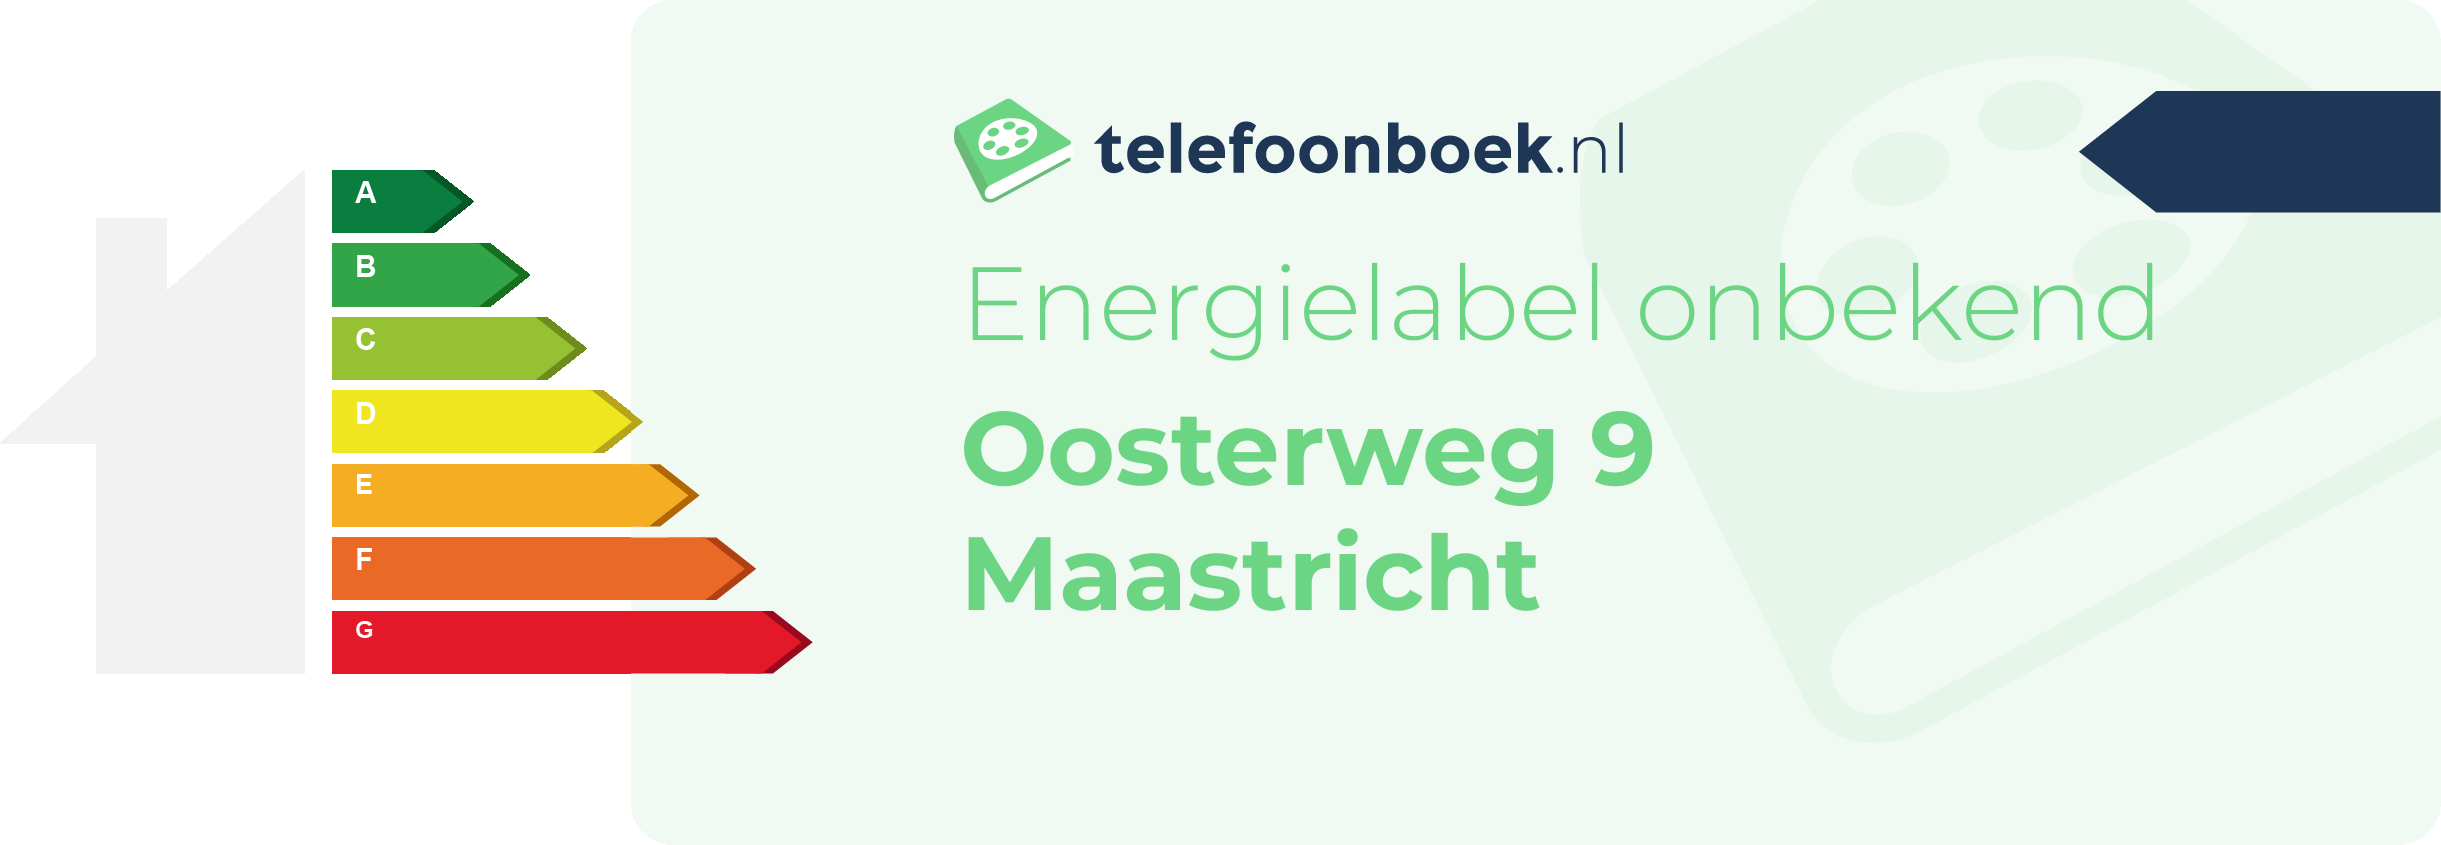 Energielabel Oosterweg 9 Maastricht